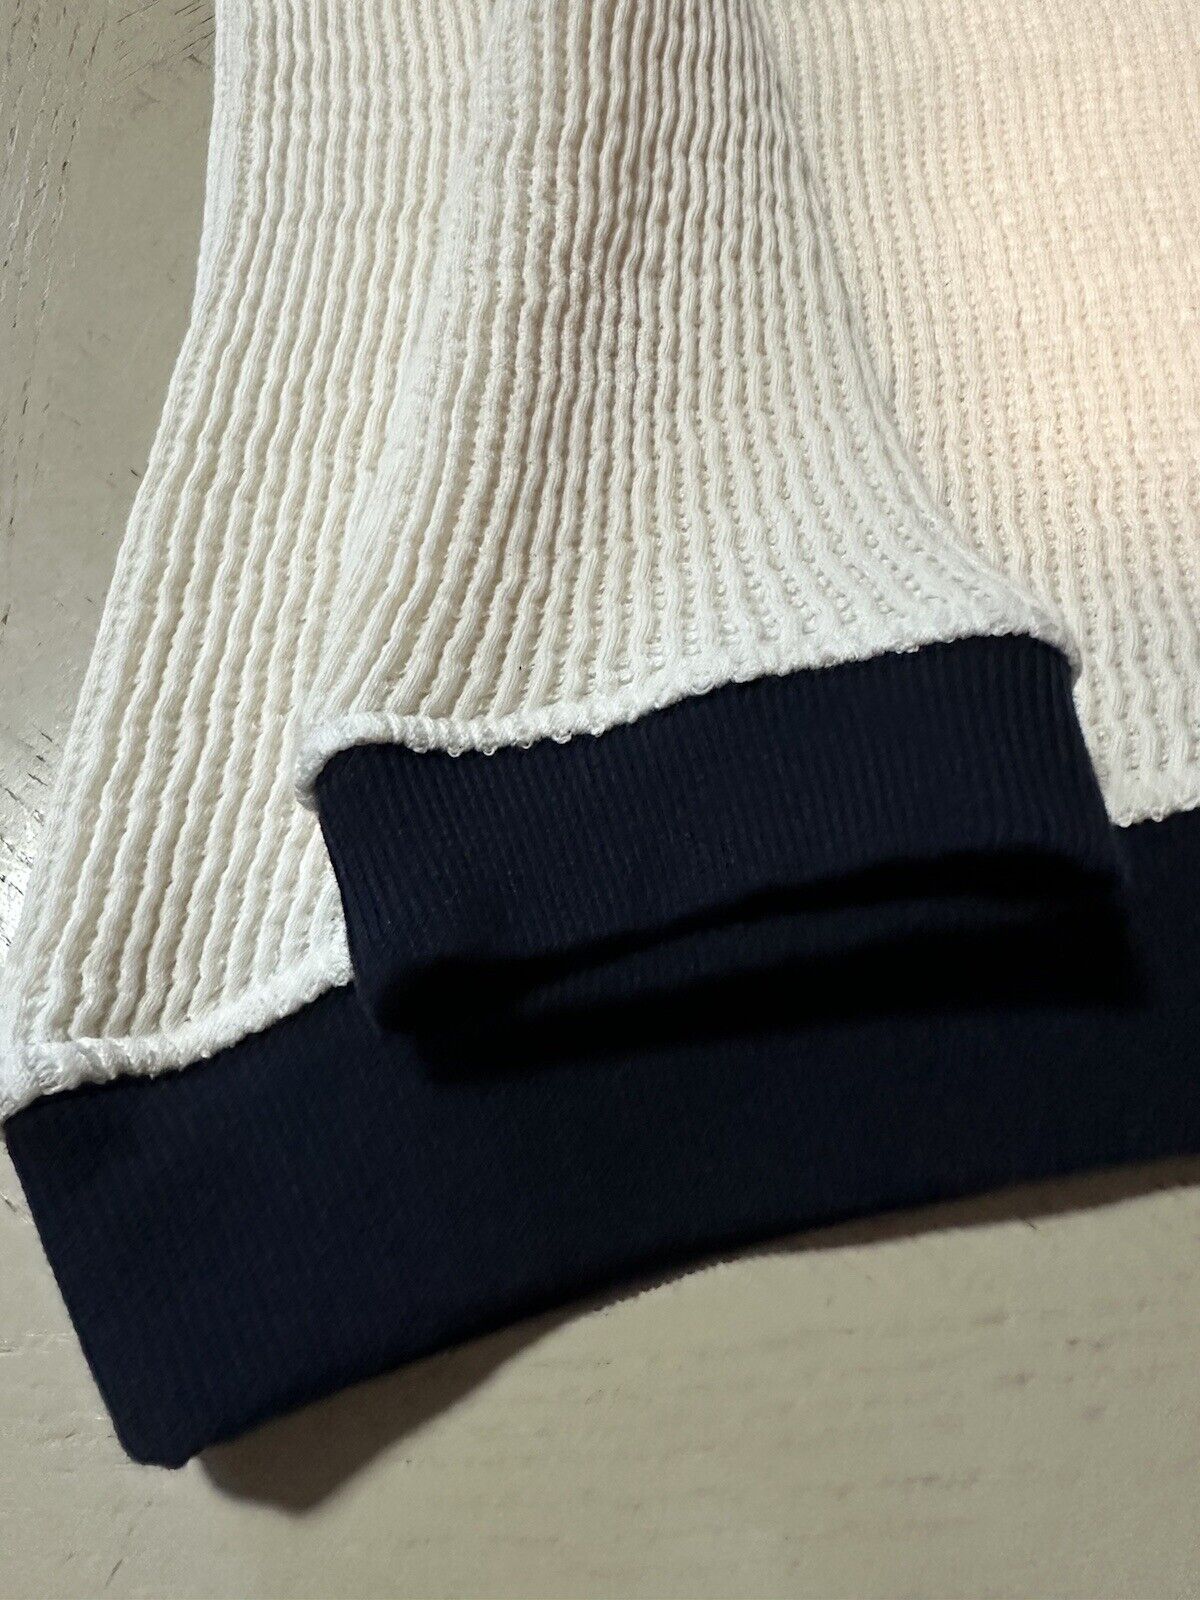 New $1295 Giorgio Armani Men’s Crewneck Sweater White/Blue/Green 52 US ( L )